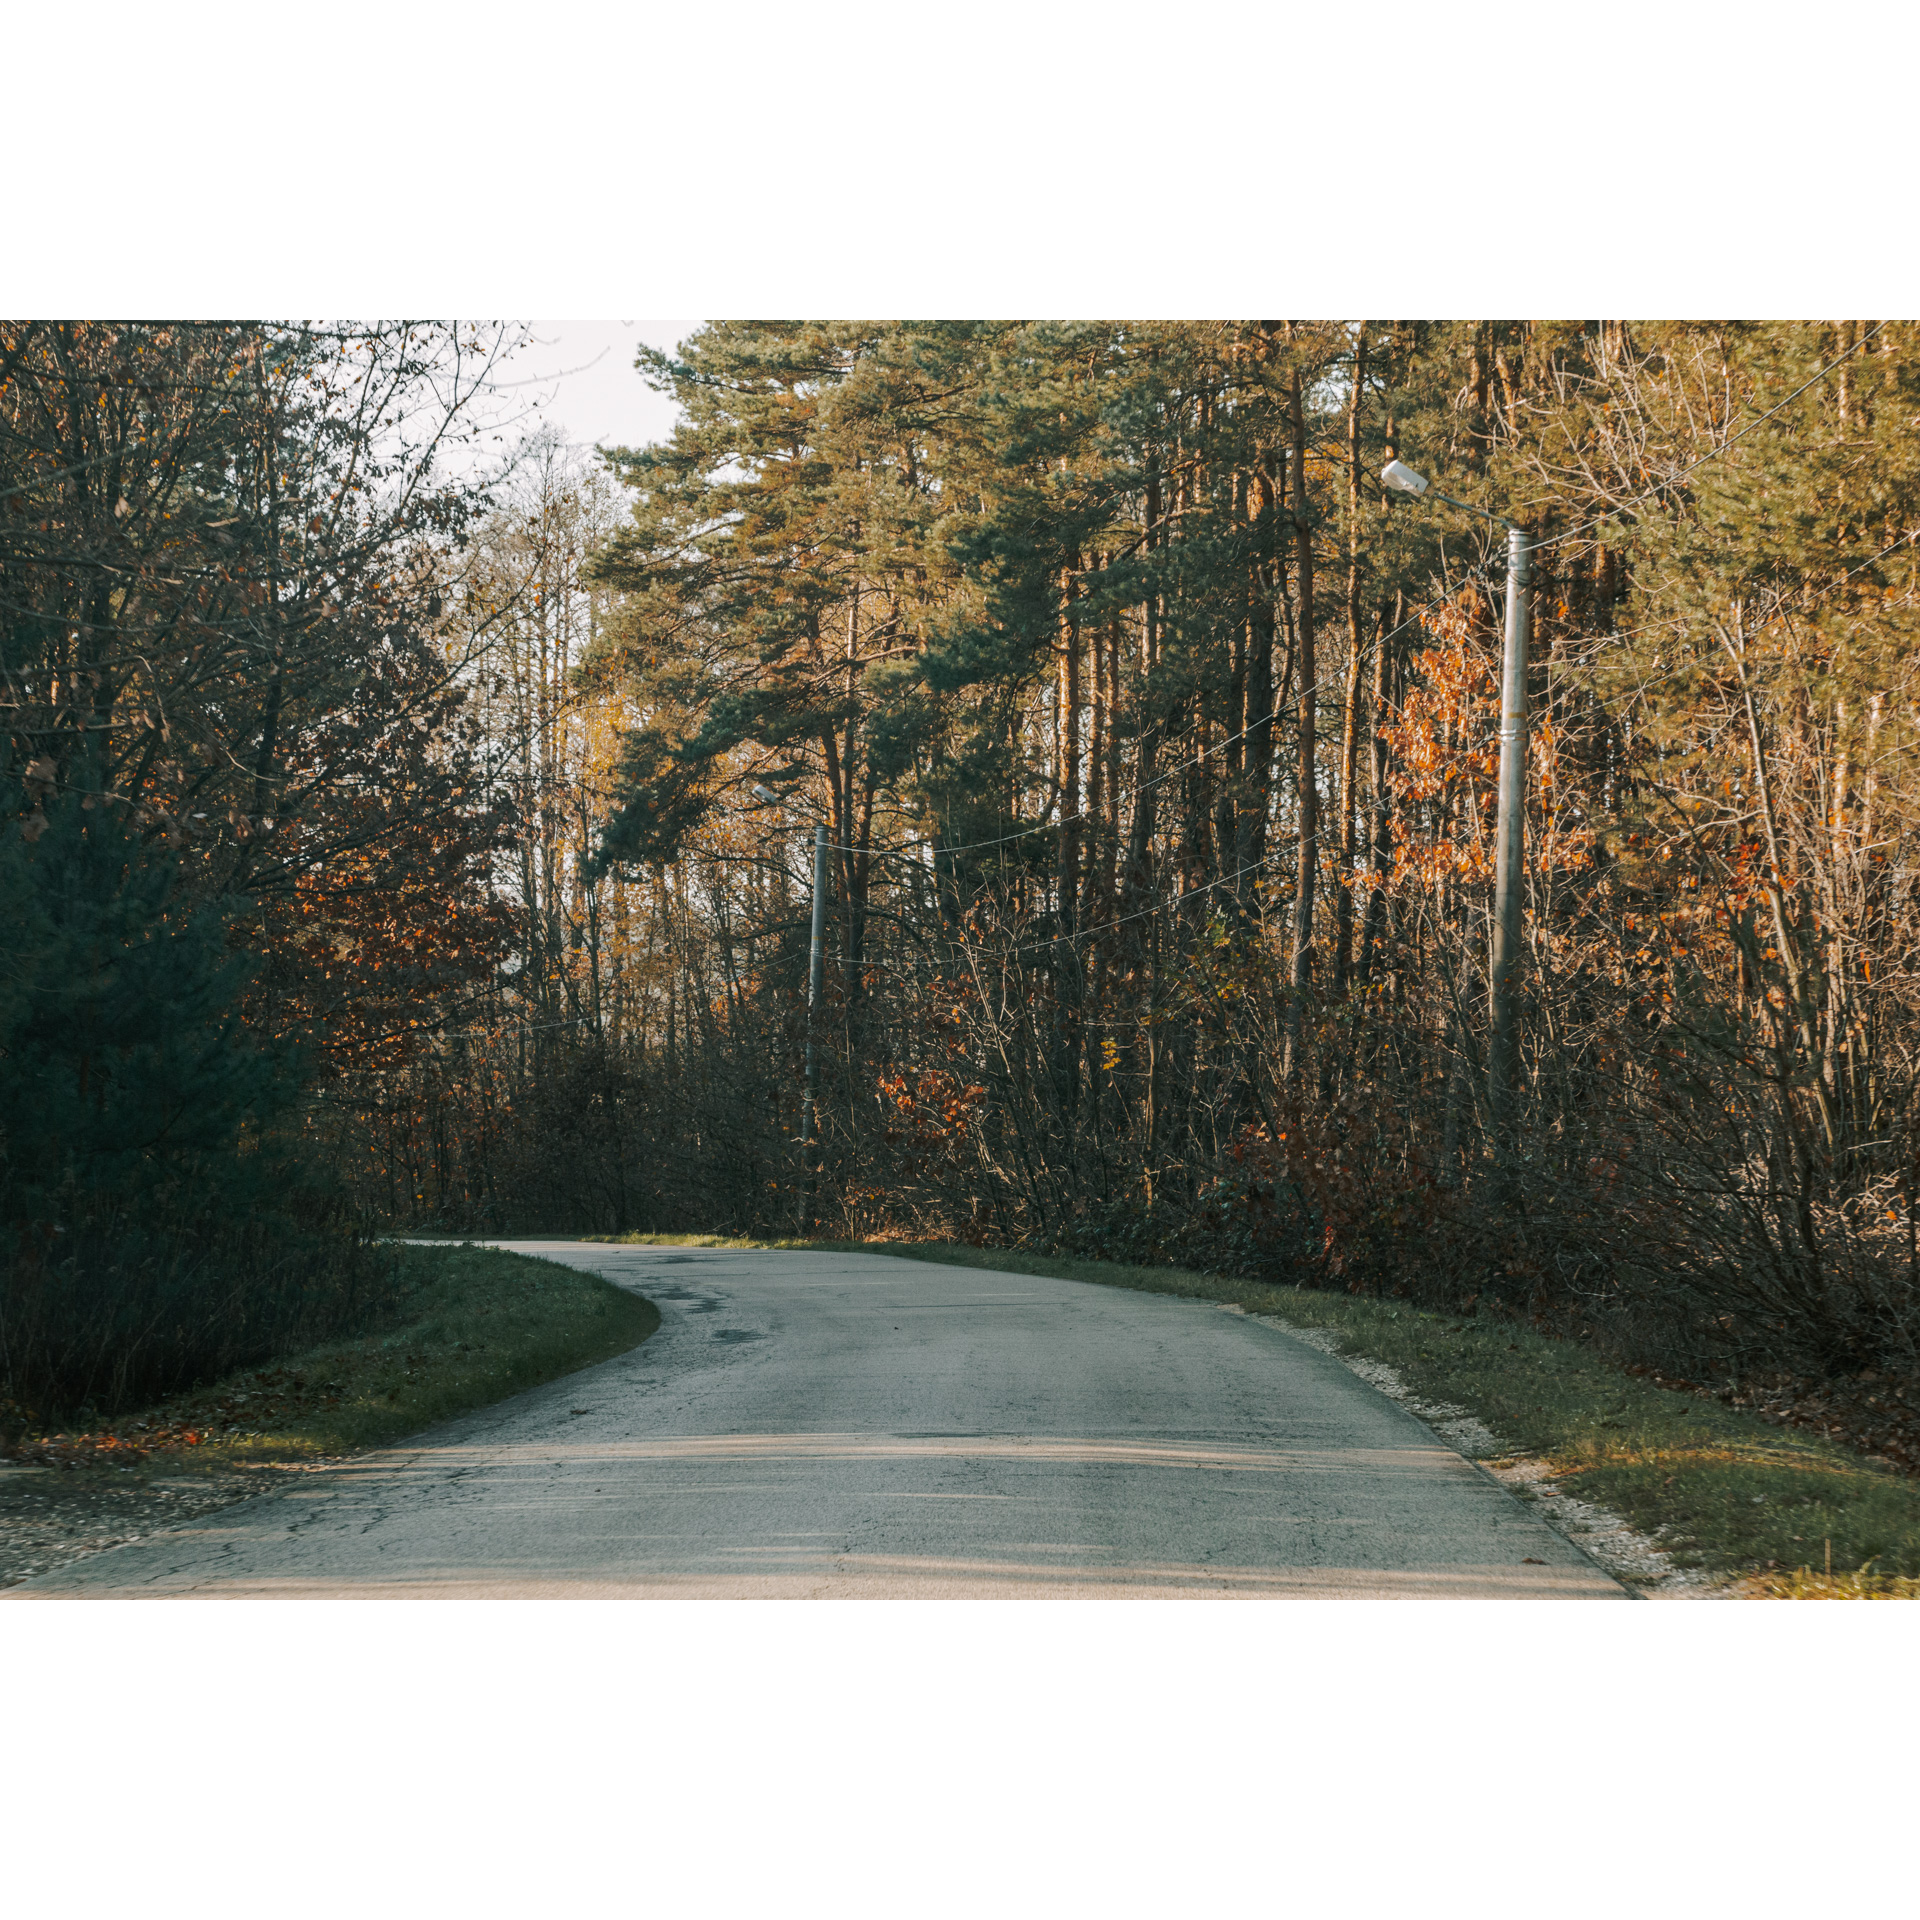 Droga asfaltowa prowadząca przez las mieszany o zielono-pomarańczowych barwach